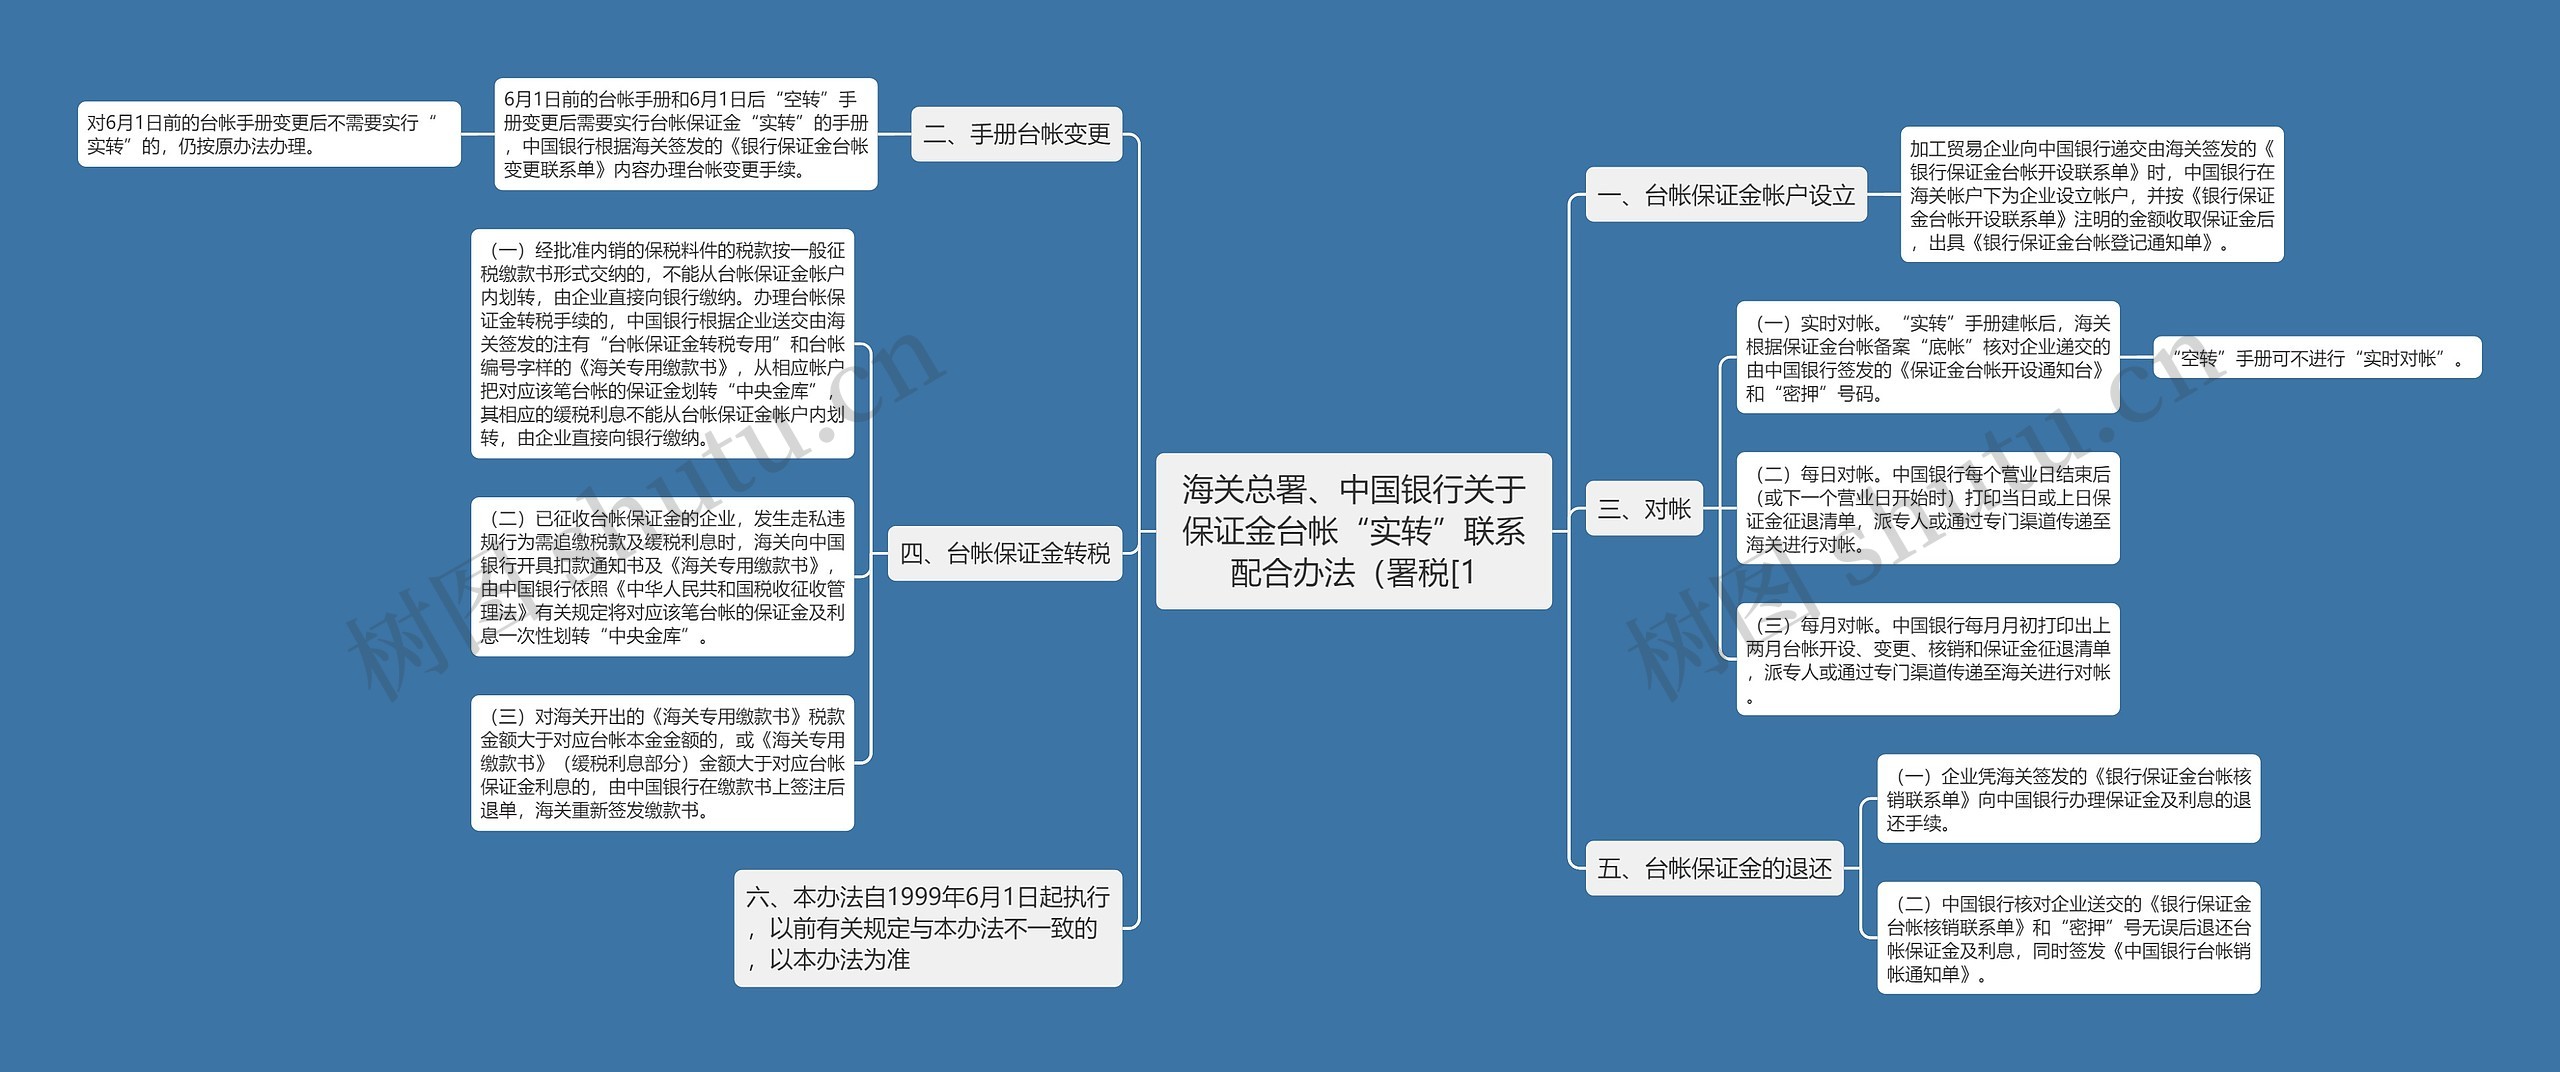 海关总署、中国银行关于保证金台帐“实转”联系配合办法（署税[1思维导图